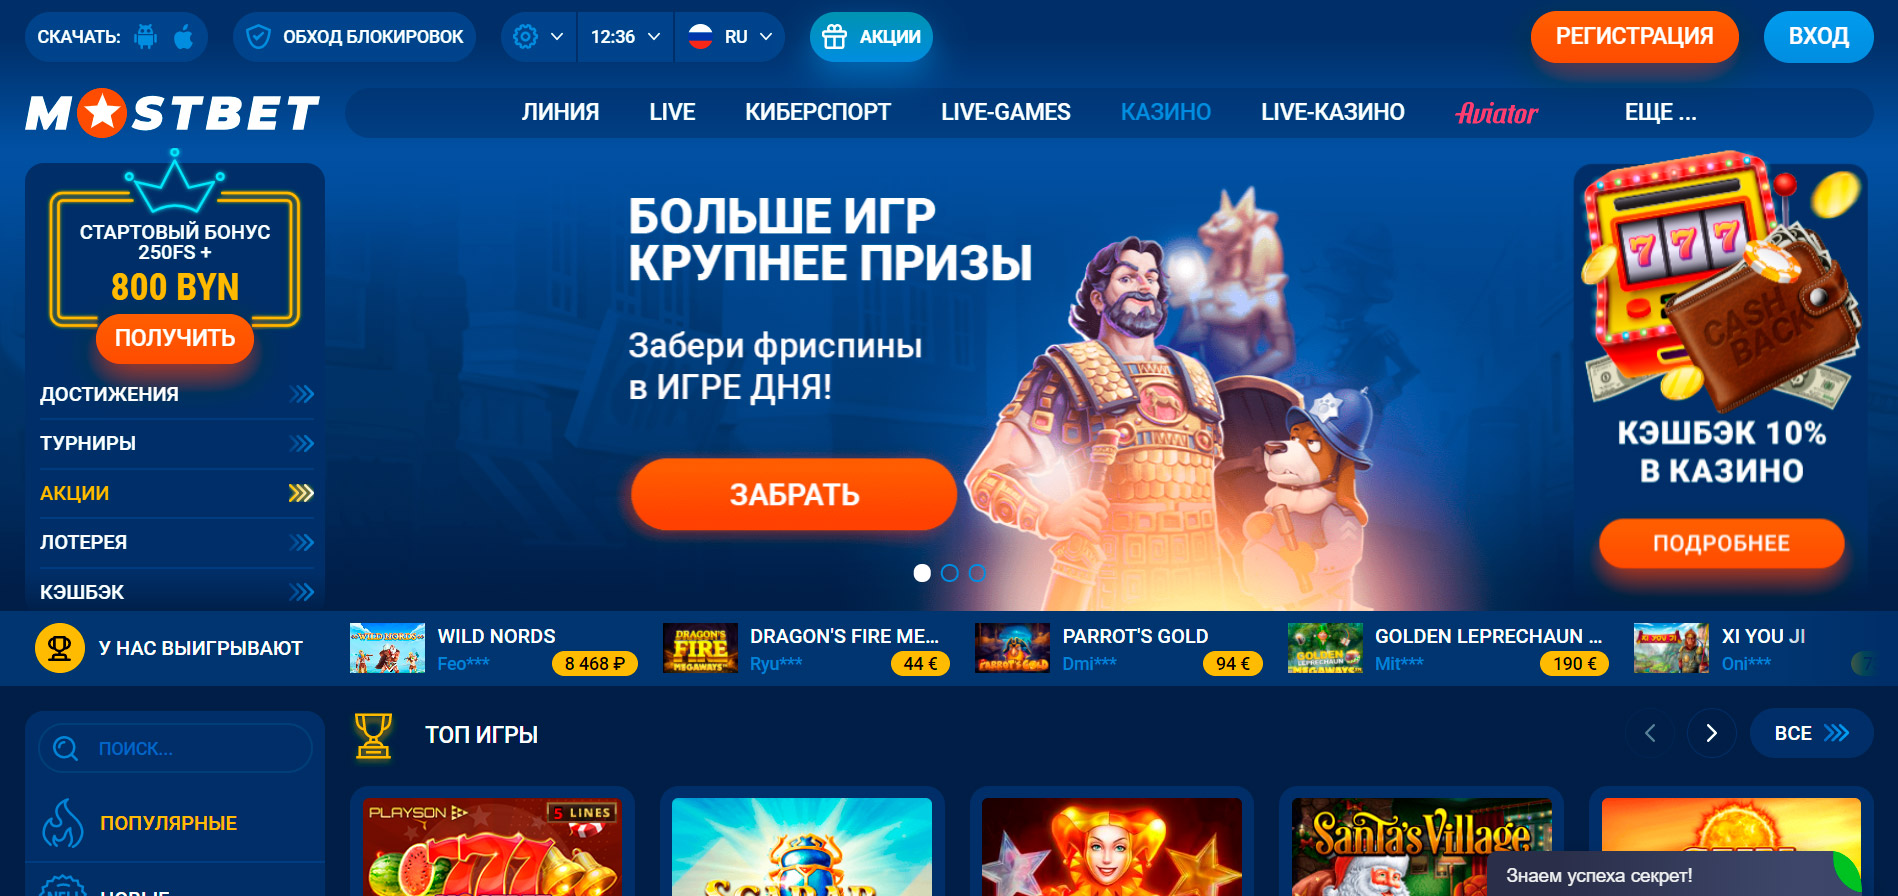 Мостбет игровые автоматы россия резидент игровой автомат онлайн бесплатно